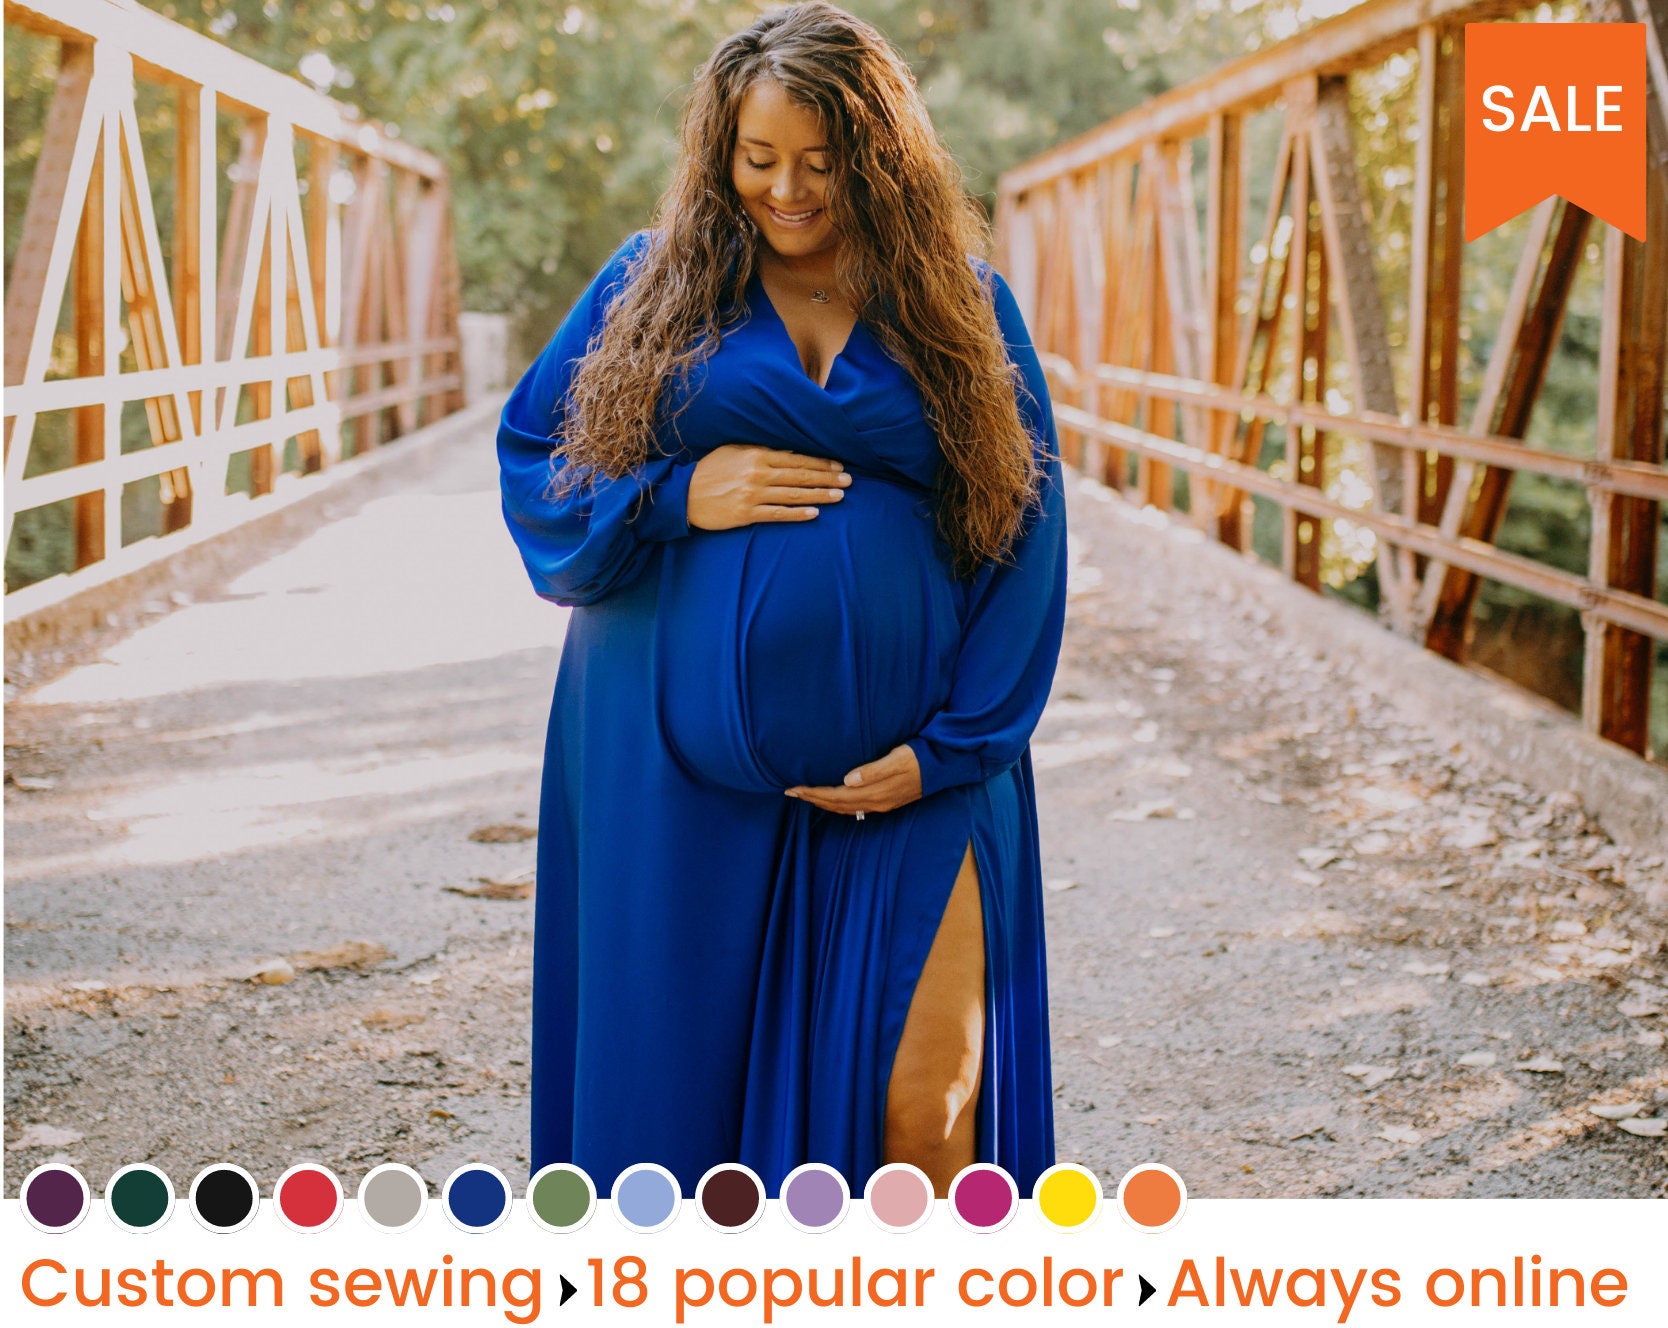 Retouch fortov samvittighed Maternity Dress Maternity Photoshoot Dress Plus Size Maternity - Etsy